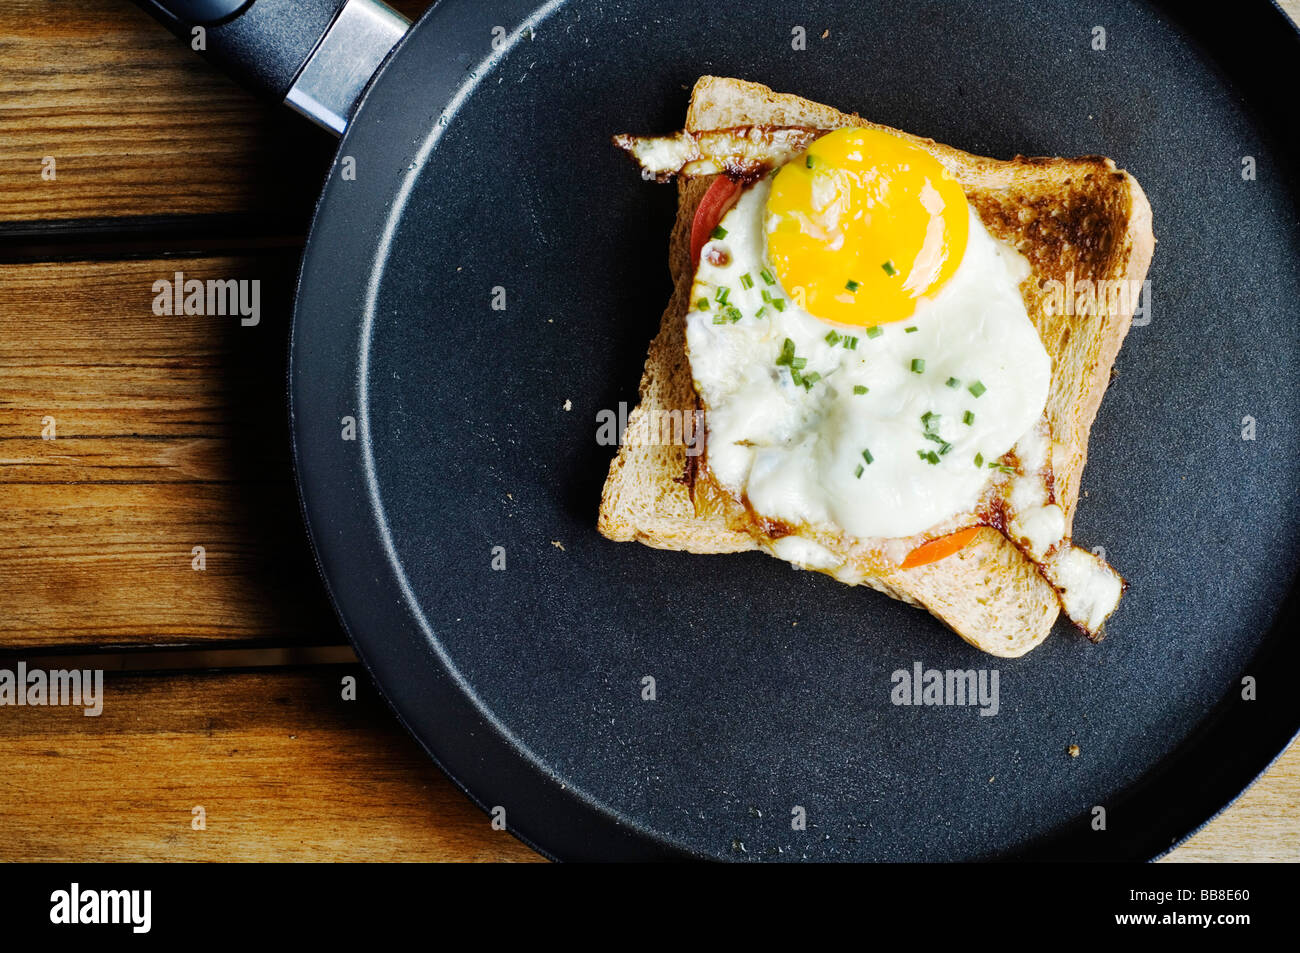 Spiegelei auf Toast mit Schnittlauch in einer Pfanne erhitzen  Stockfotografie - Alamy